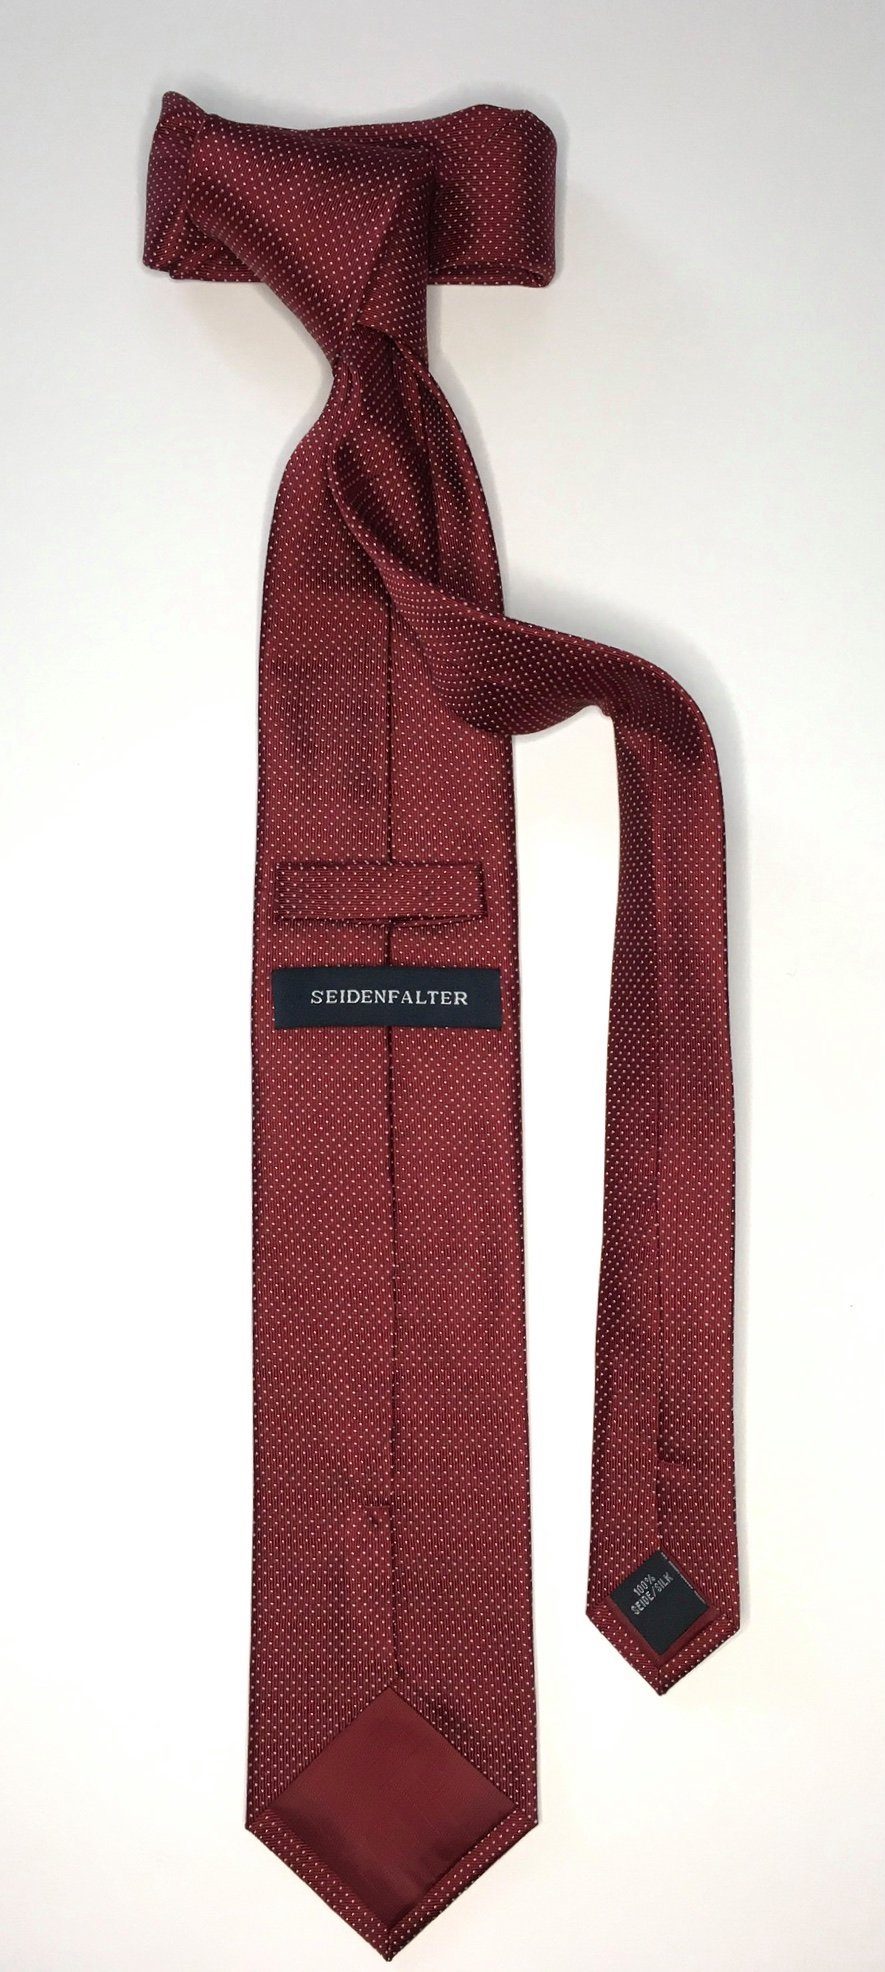 Seidenfalter Krawatte Picoté Design edlen Krawatte Seidenfalter Picoté 6cm Seidenfalter Krawatte im Bordeaux